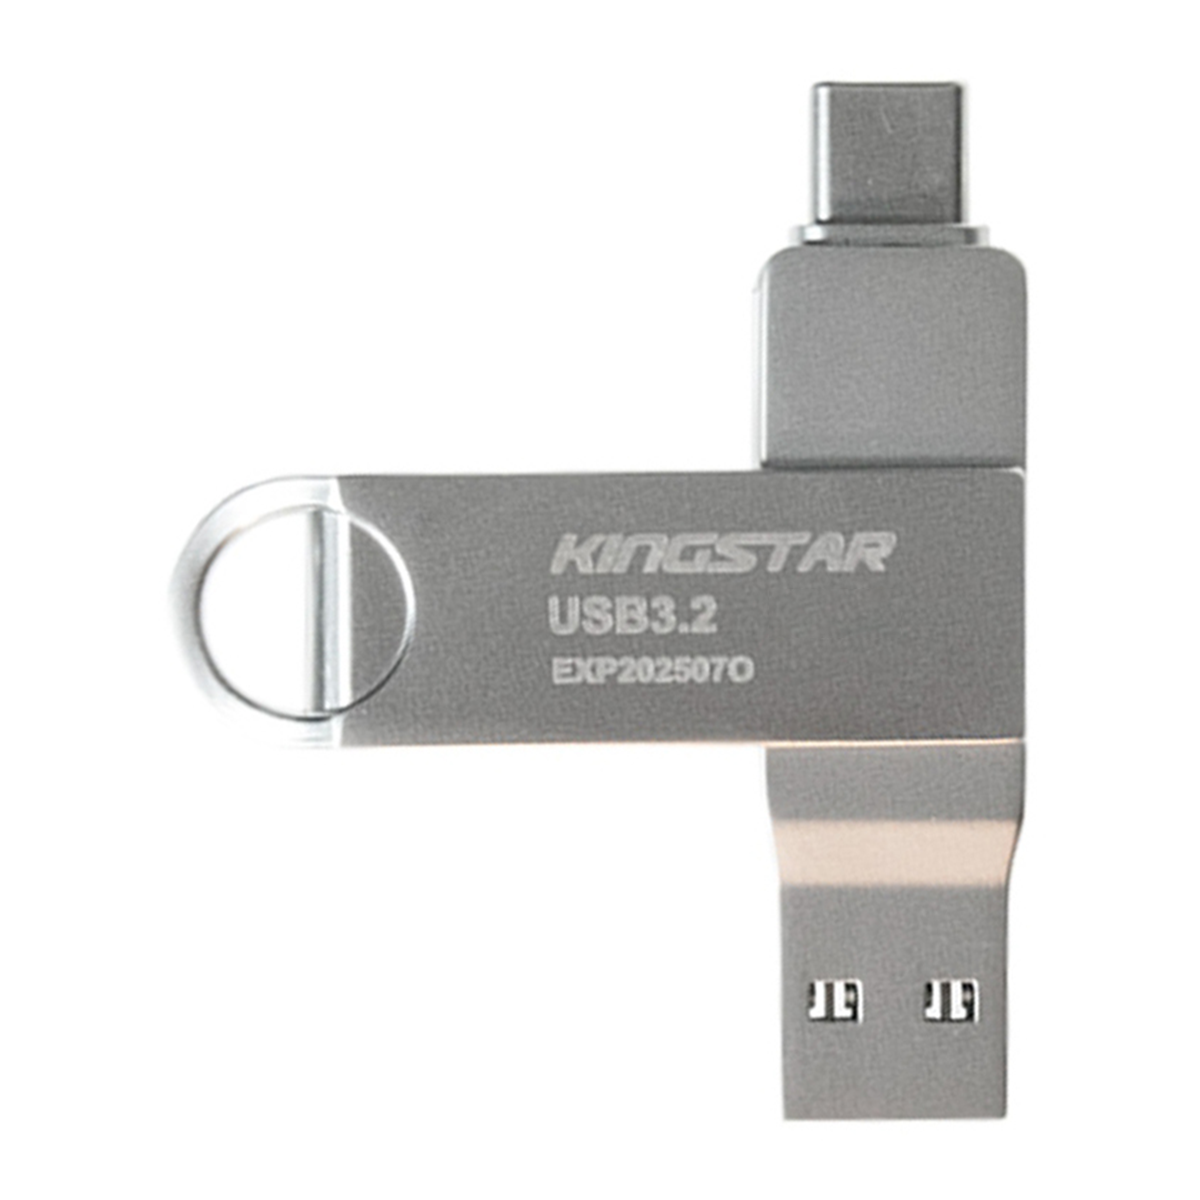 فلش مموری پاتریوت مدل C60 USB 3.2 ظرفیت 64 گیگابایت-small-image